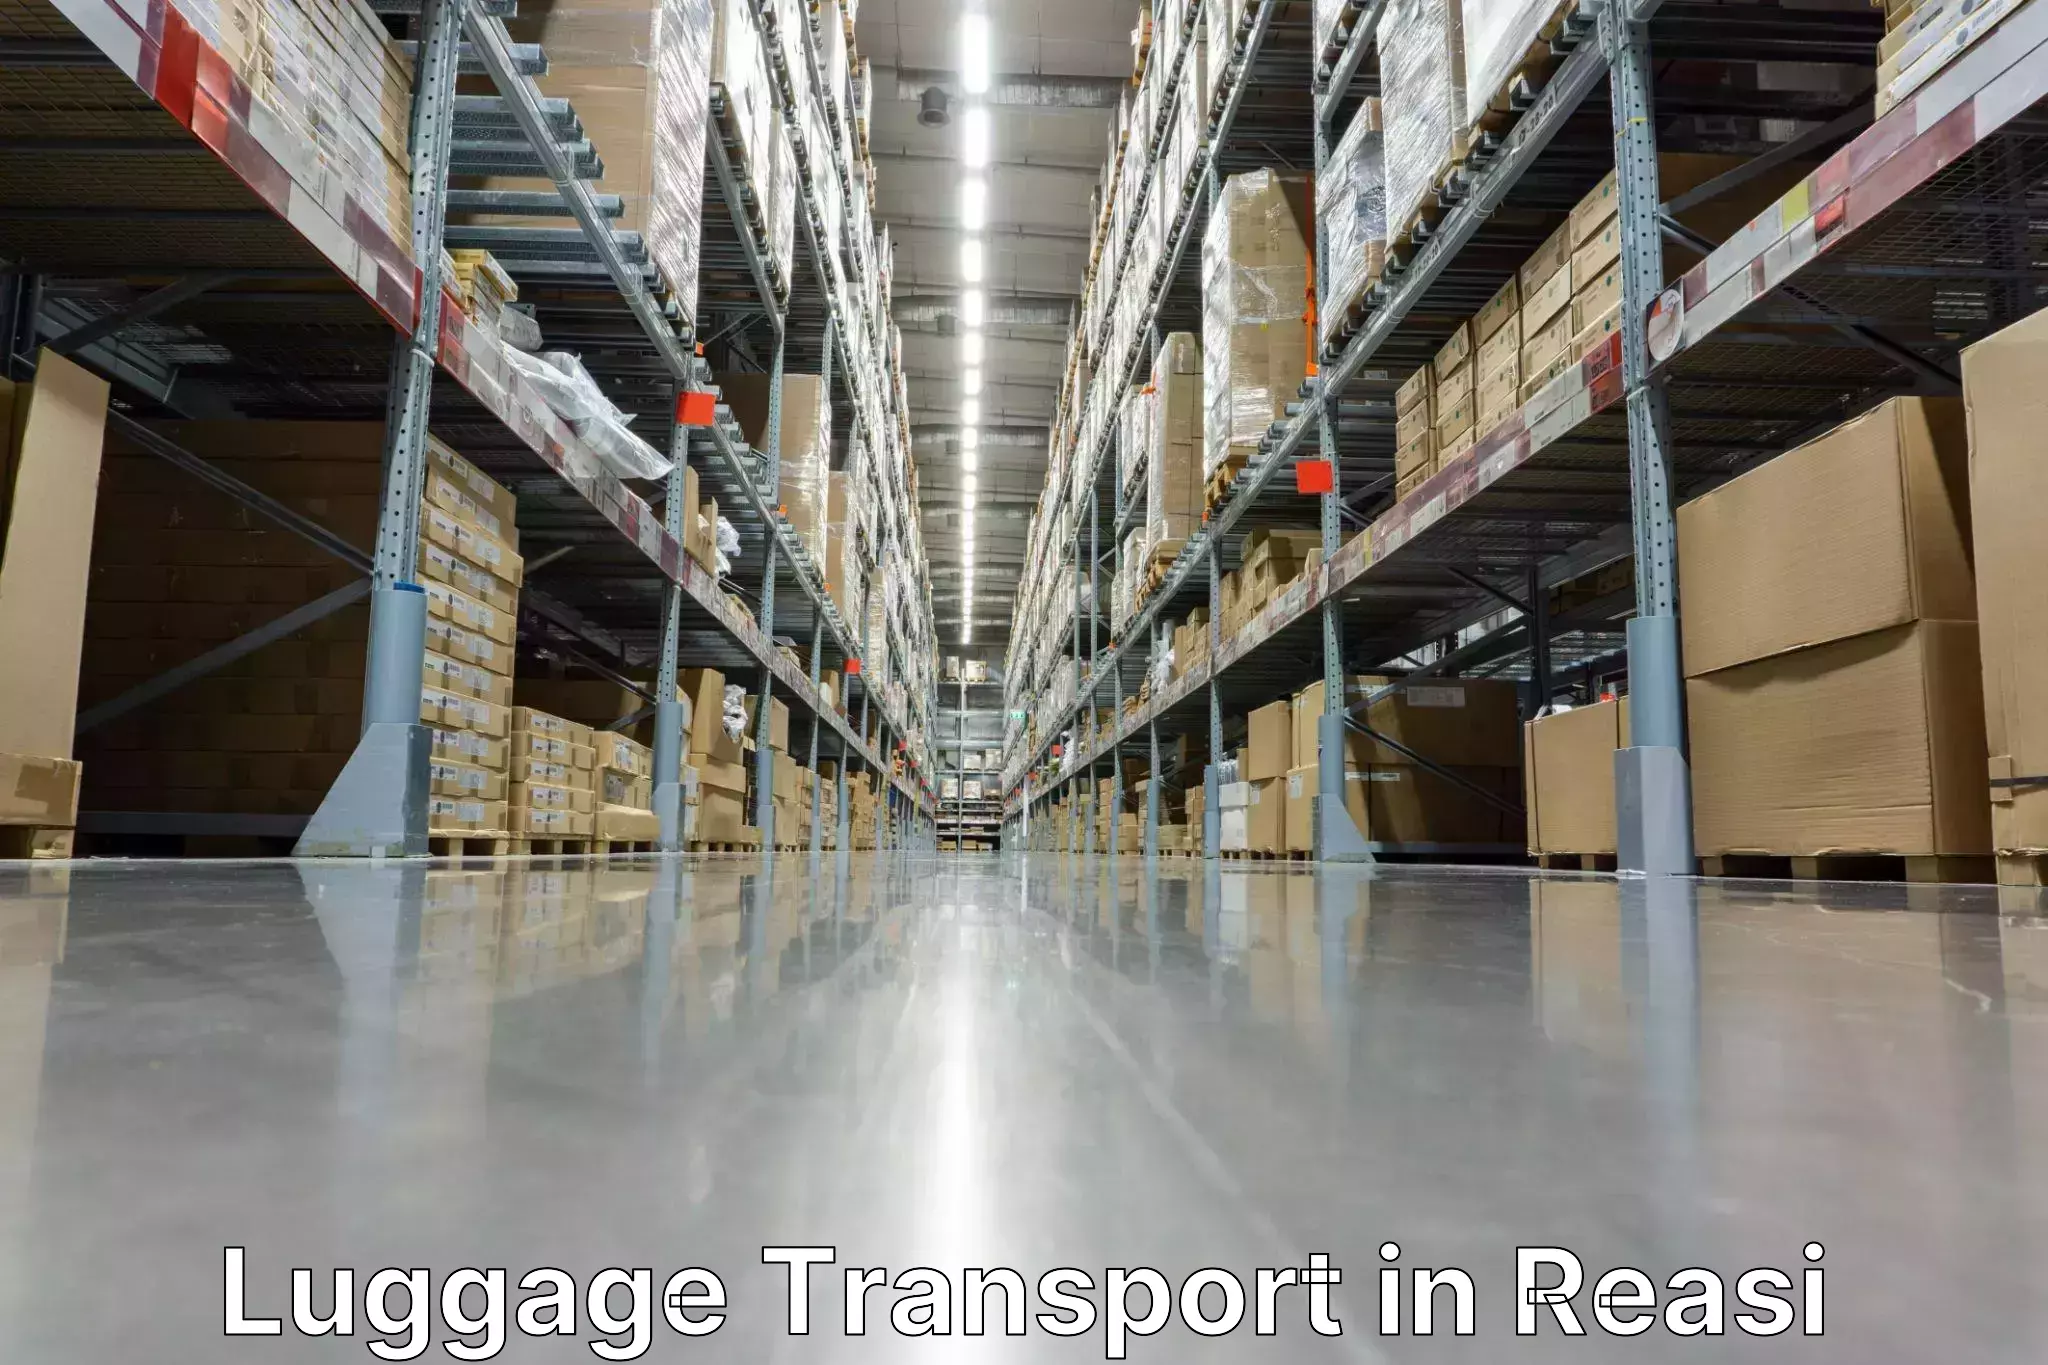 Corporate baggage transport in Reasi